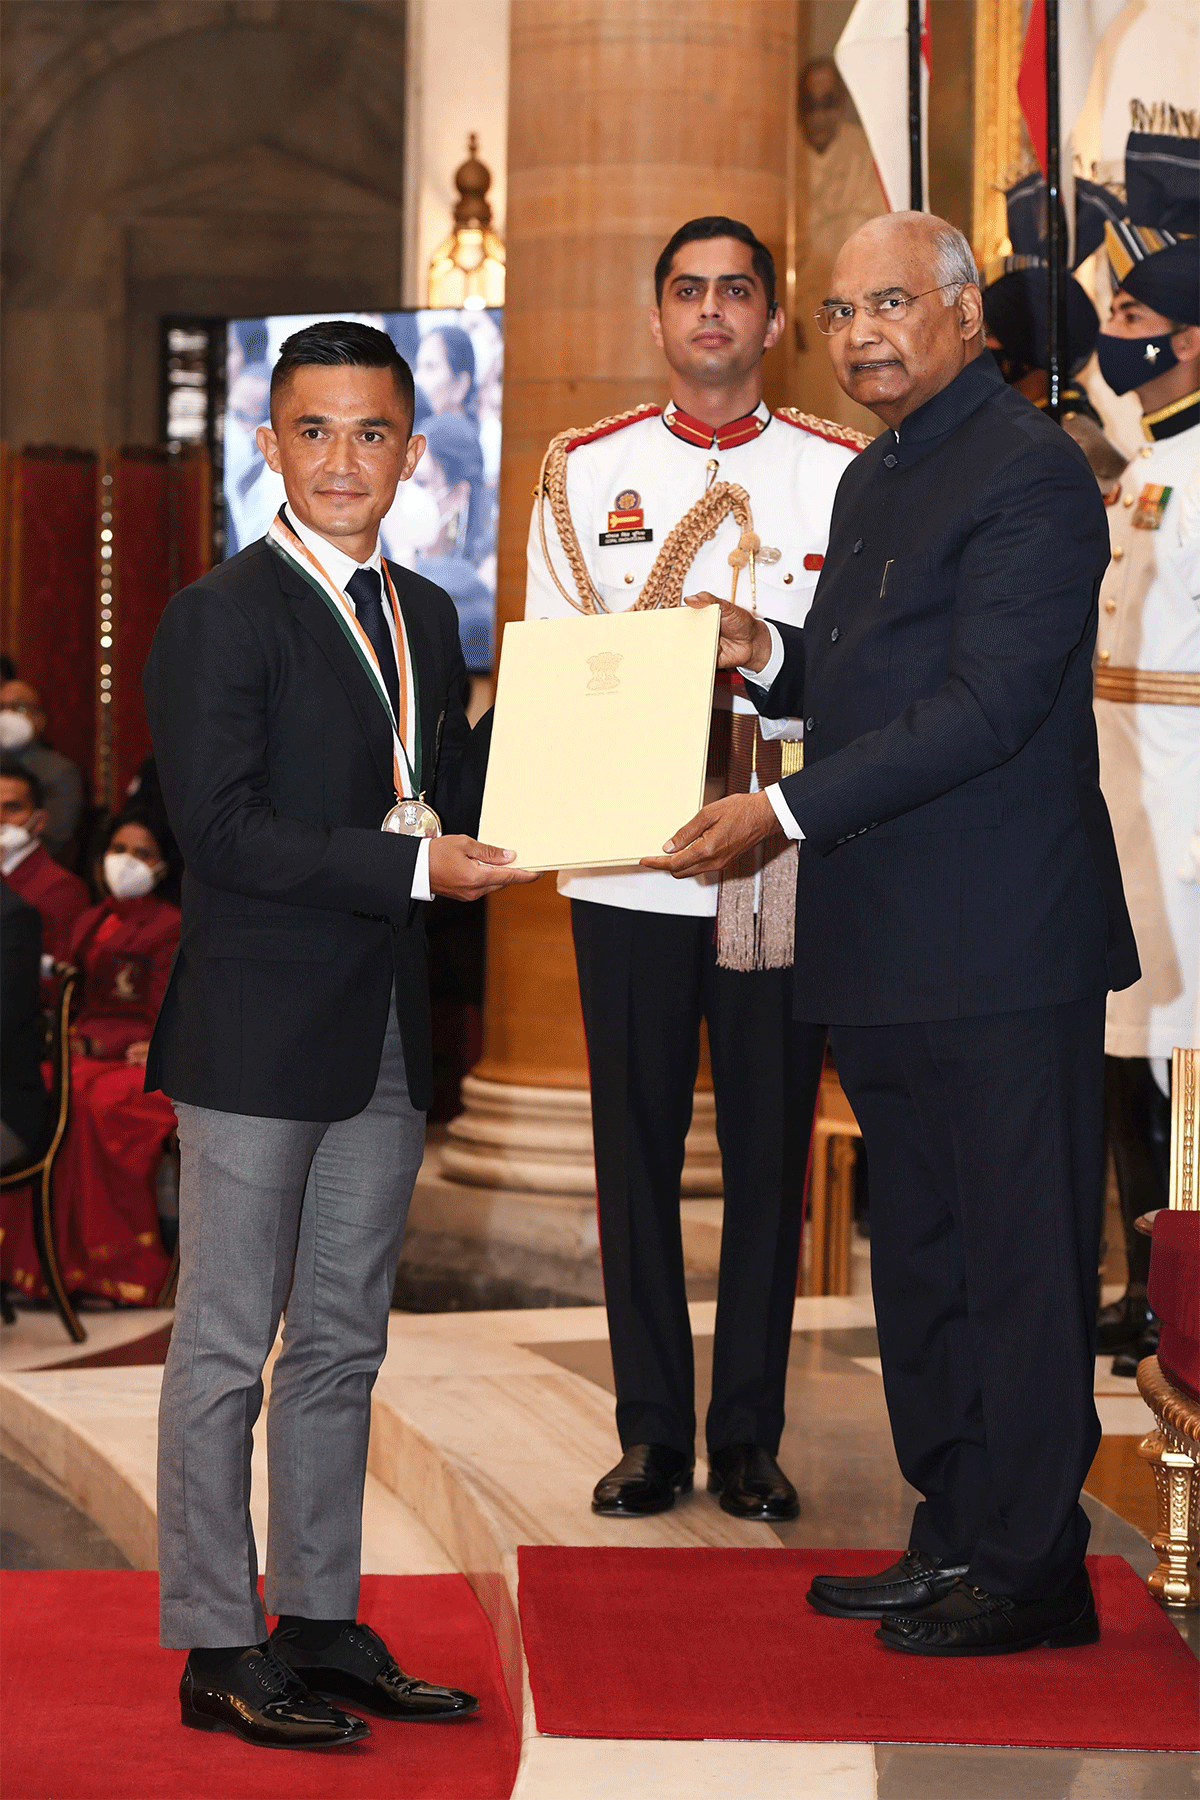 India football captain Sunil Chhetri was bestowed with the Khel Ratna Award on Saturday